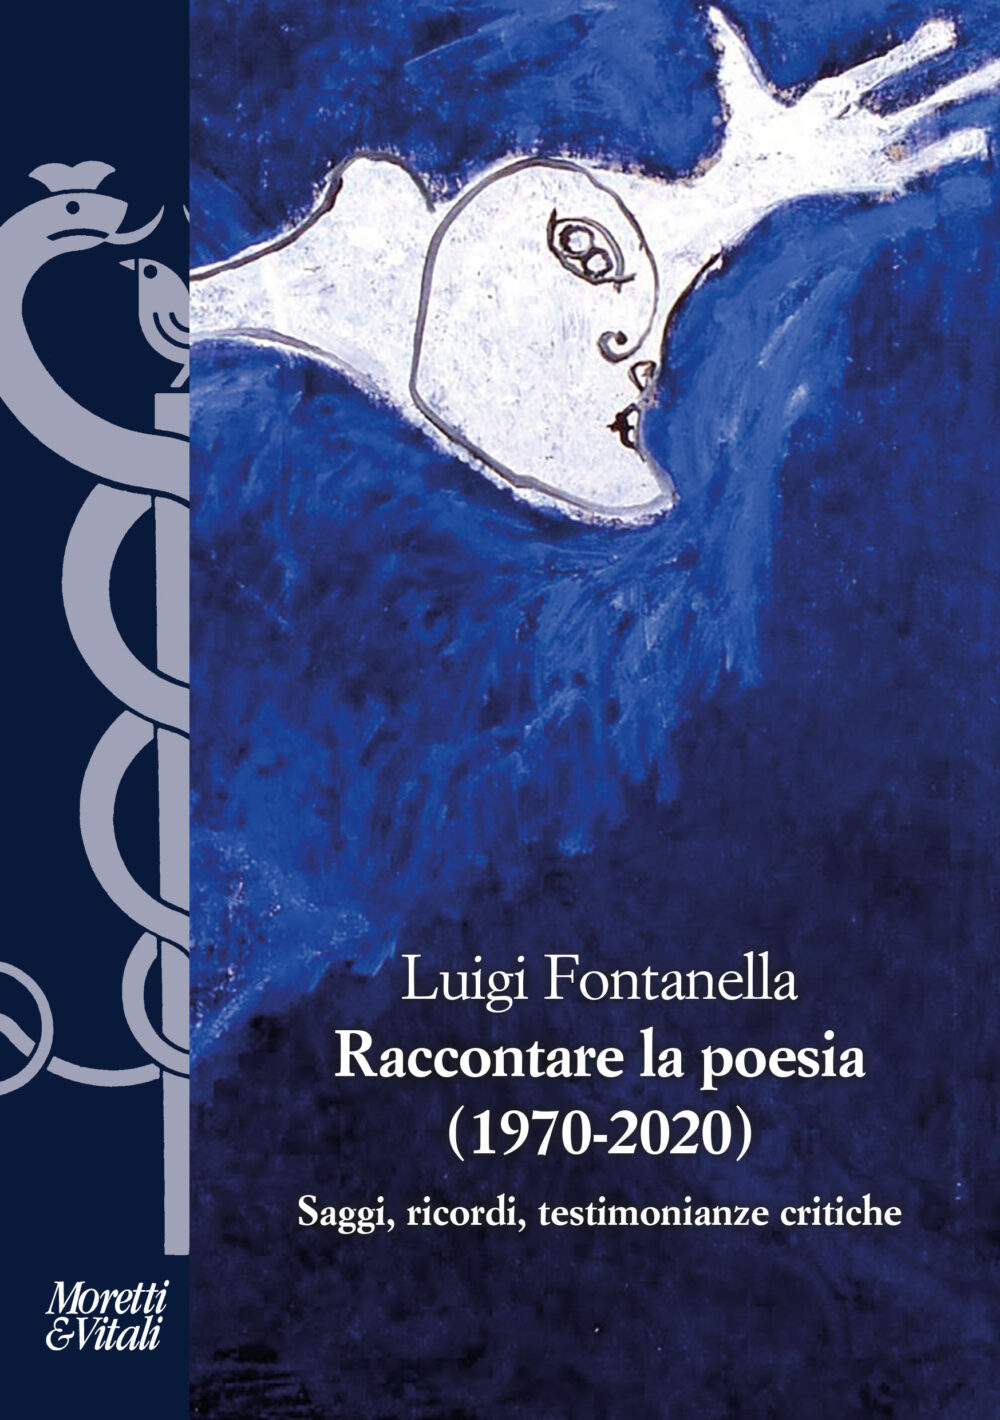 Luigi Fontanella, Raccontare la poesia (1970-2020), Moretti & Vitali, Milano 2021, euro 38,00